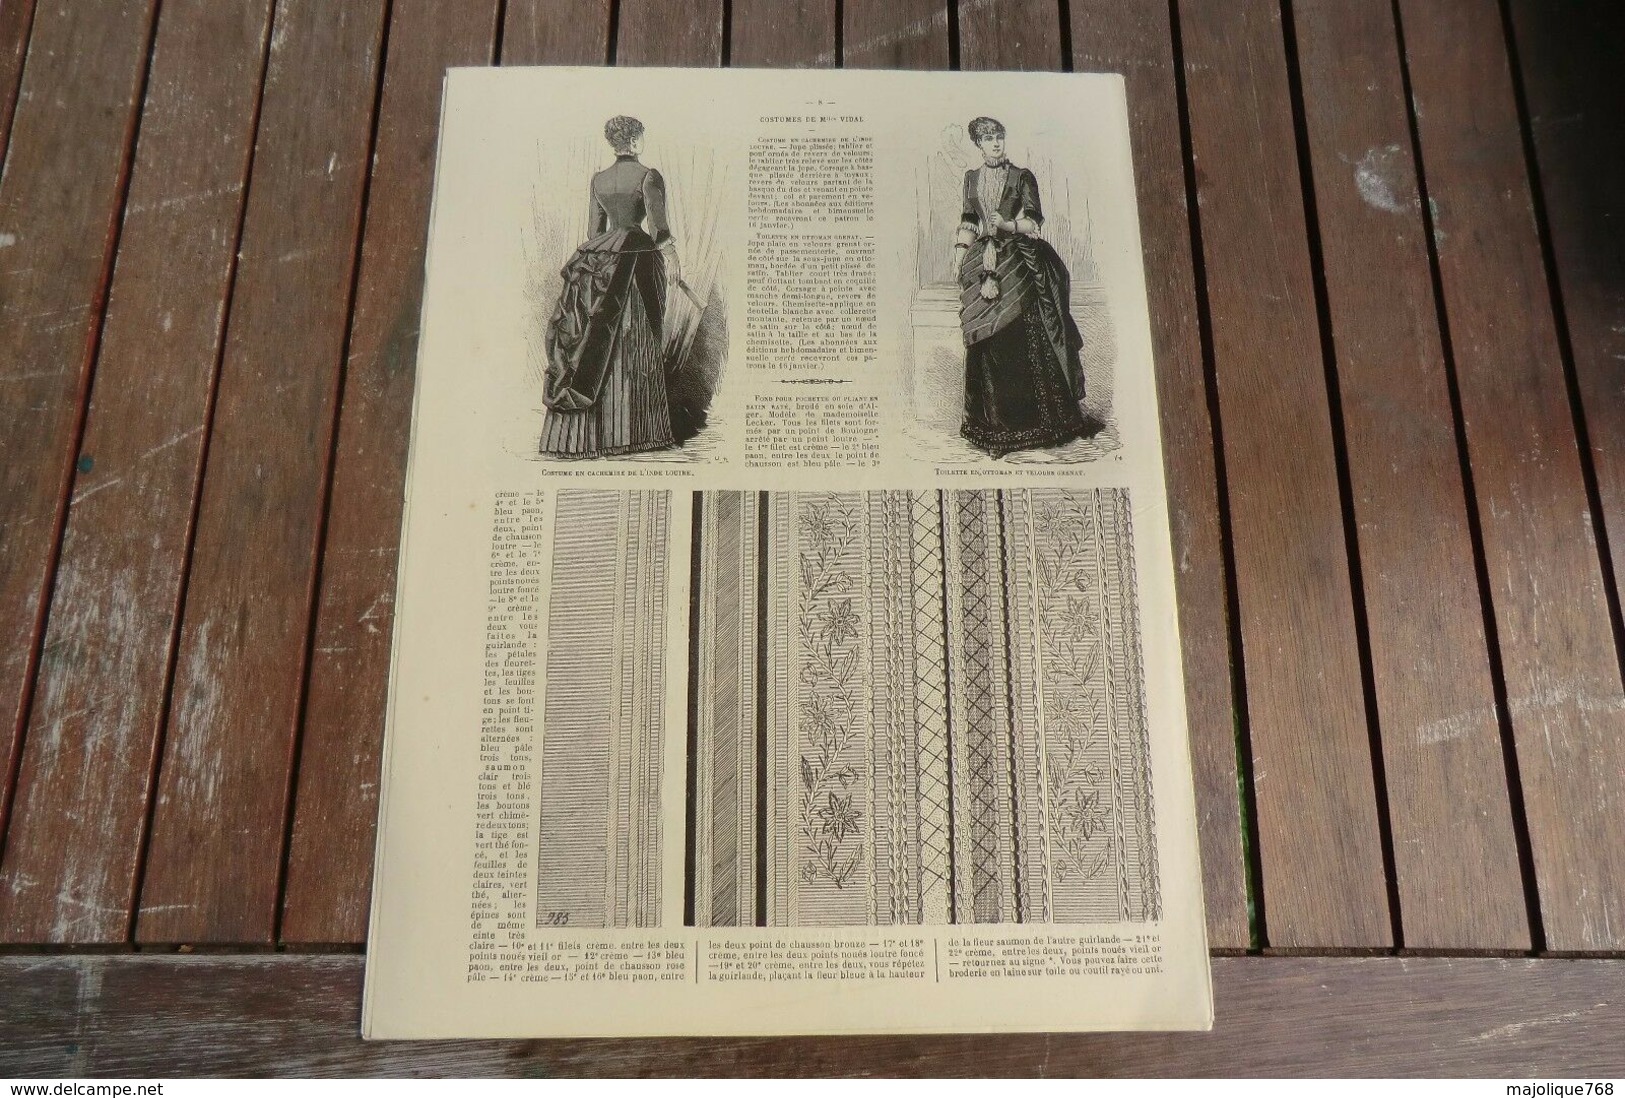 Revue - Journal Des Demoiselles 2 Rue Drouot Paris - 1°album Janvier 1884 - 8 Pages - Cross Stitch